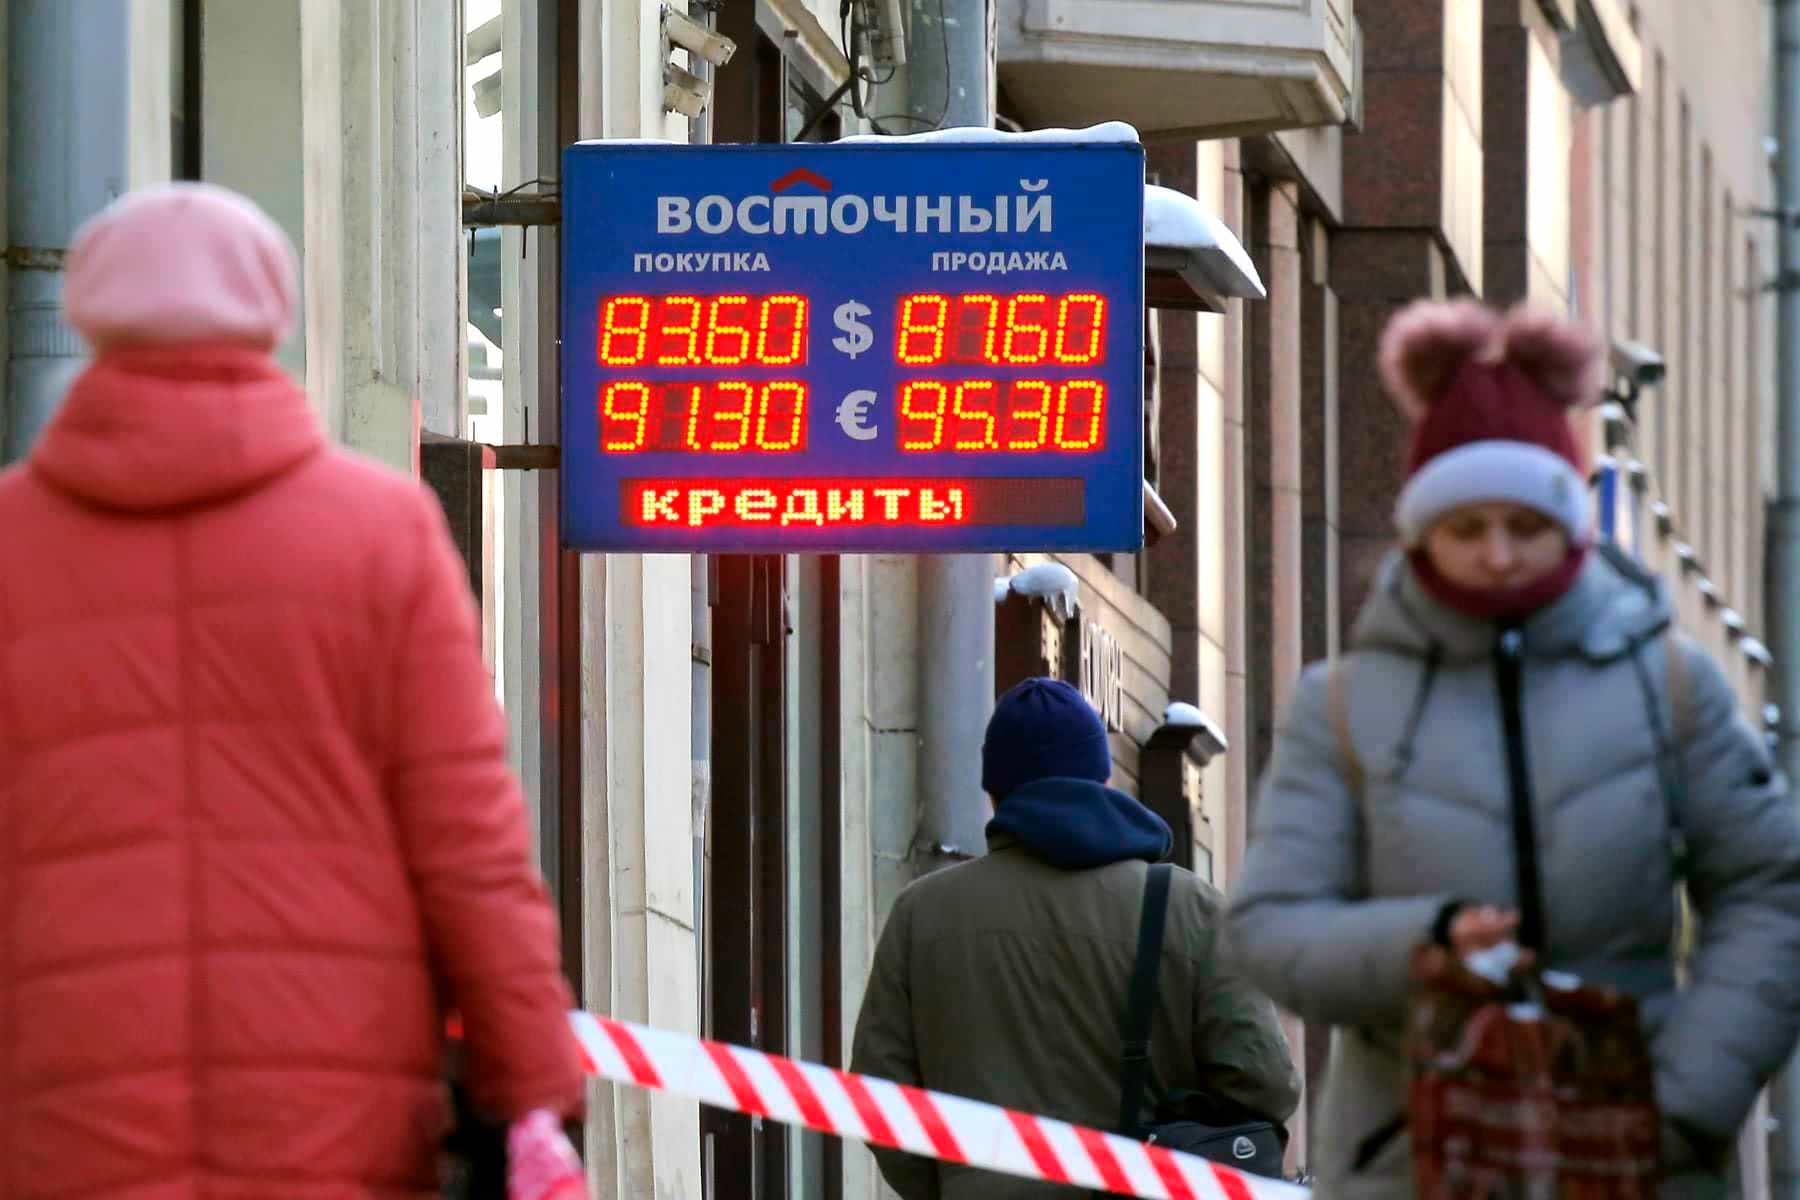 66989 Власти рассказали о будущем дефолте в России, который случится в апреле